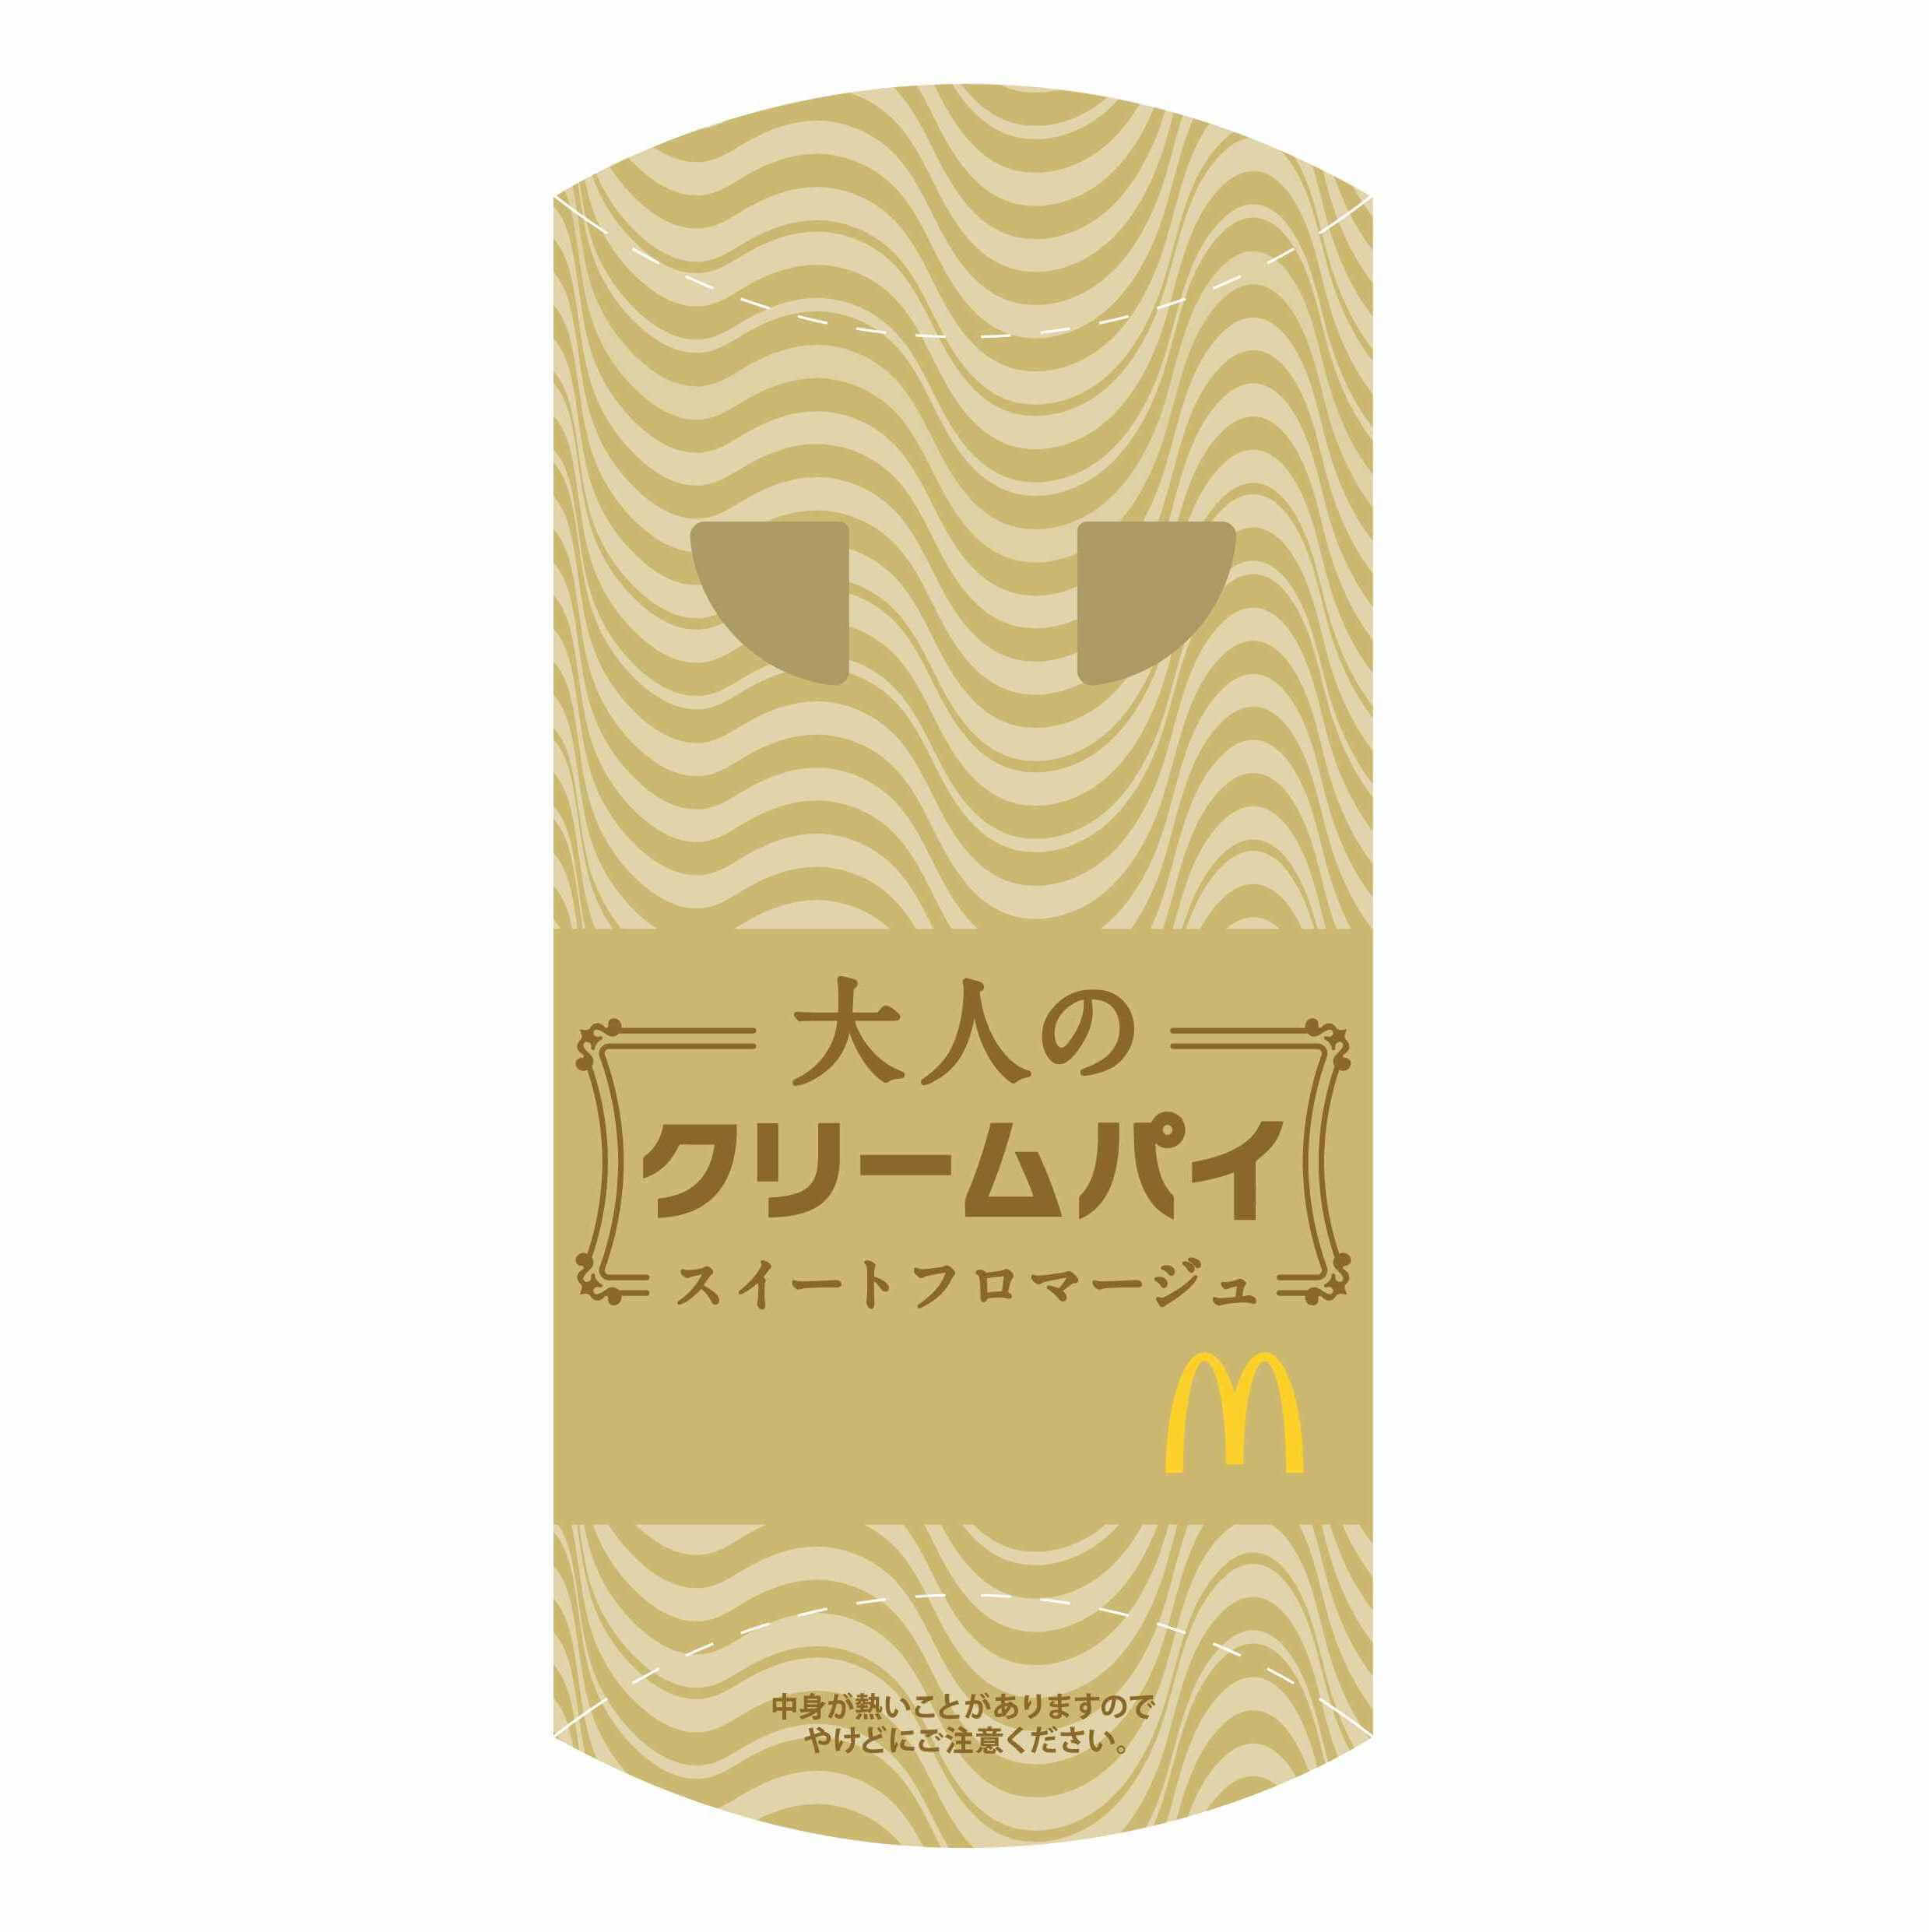 マクドナルド McDonald 麥當勞 大人のパイ Pie 2